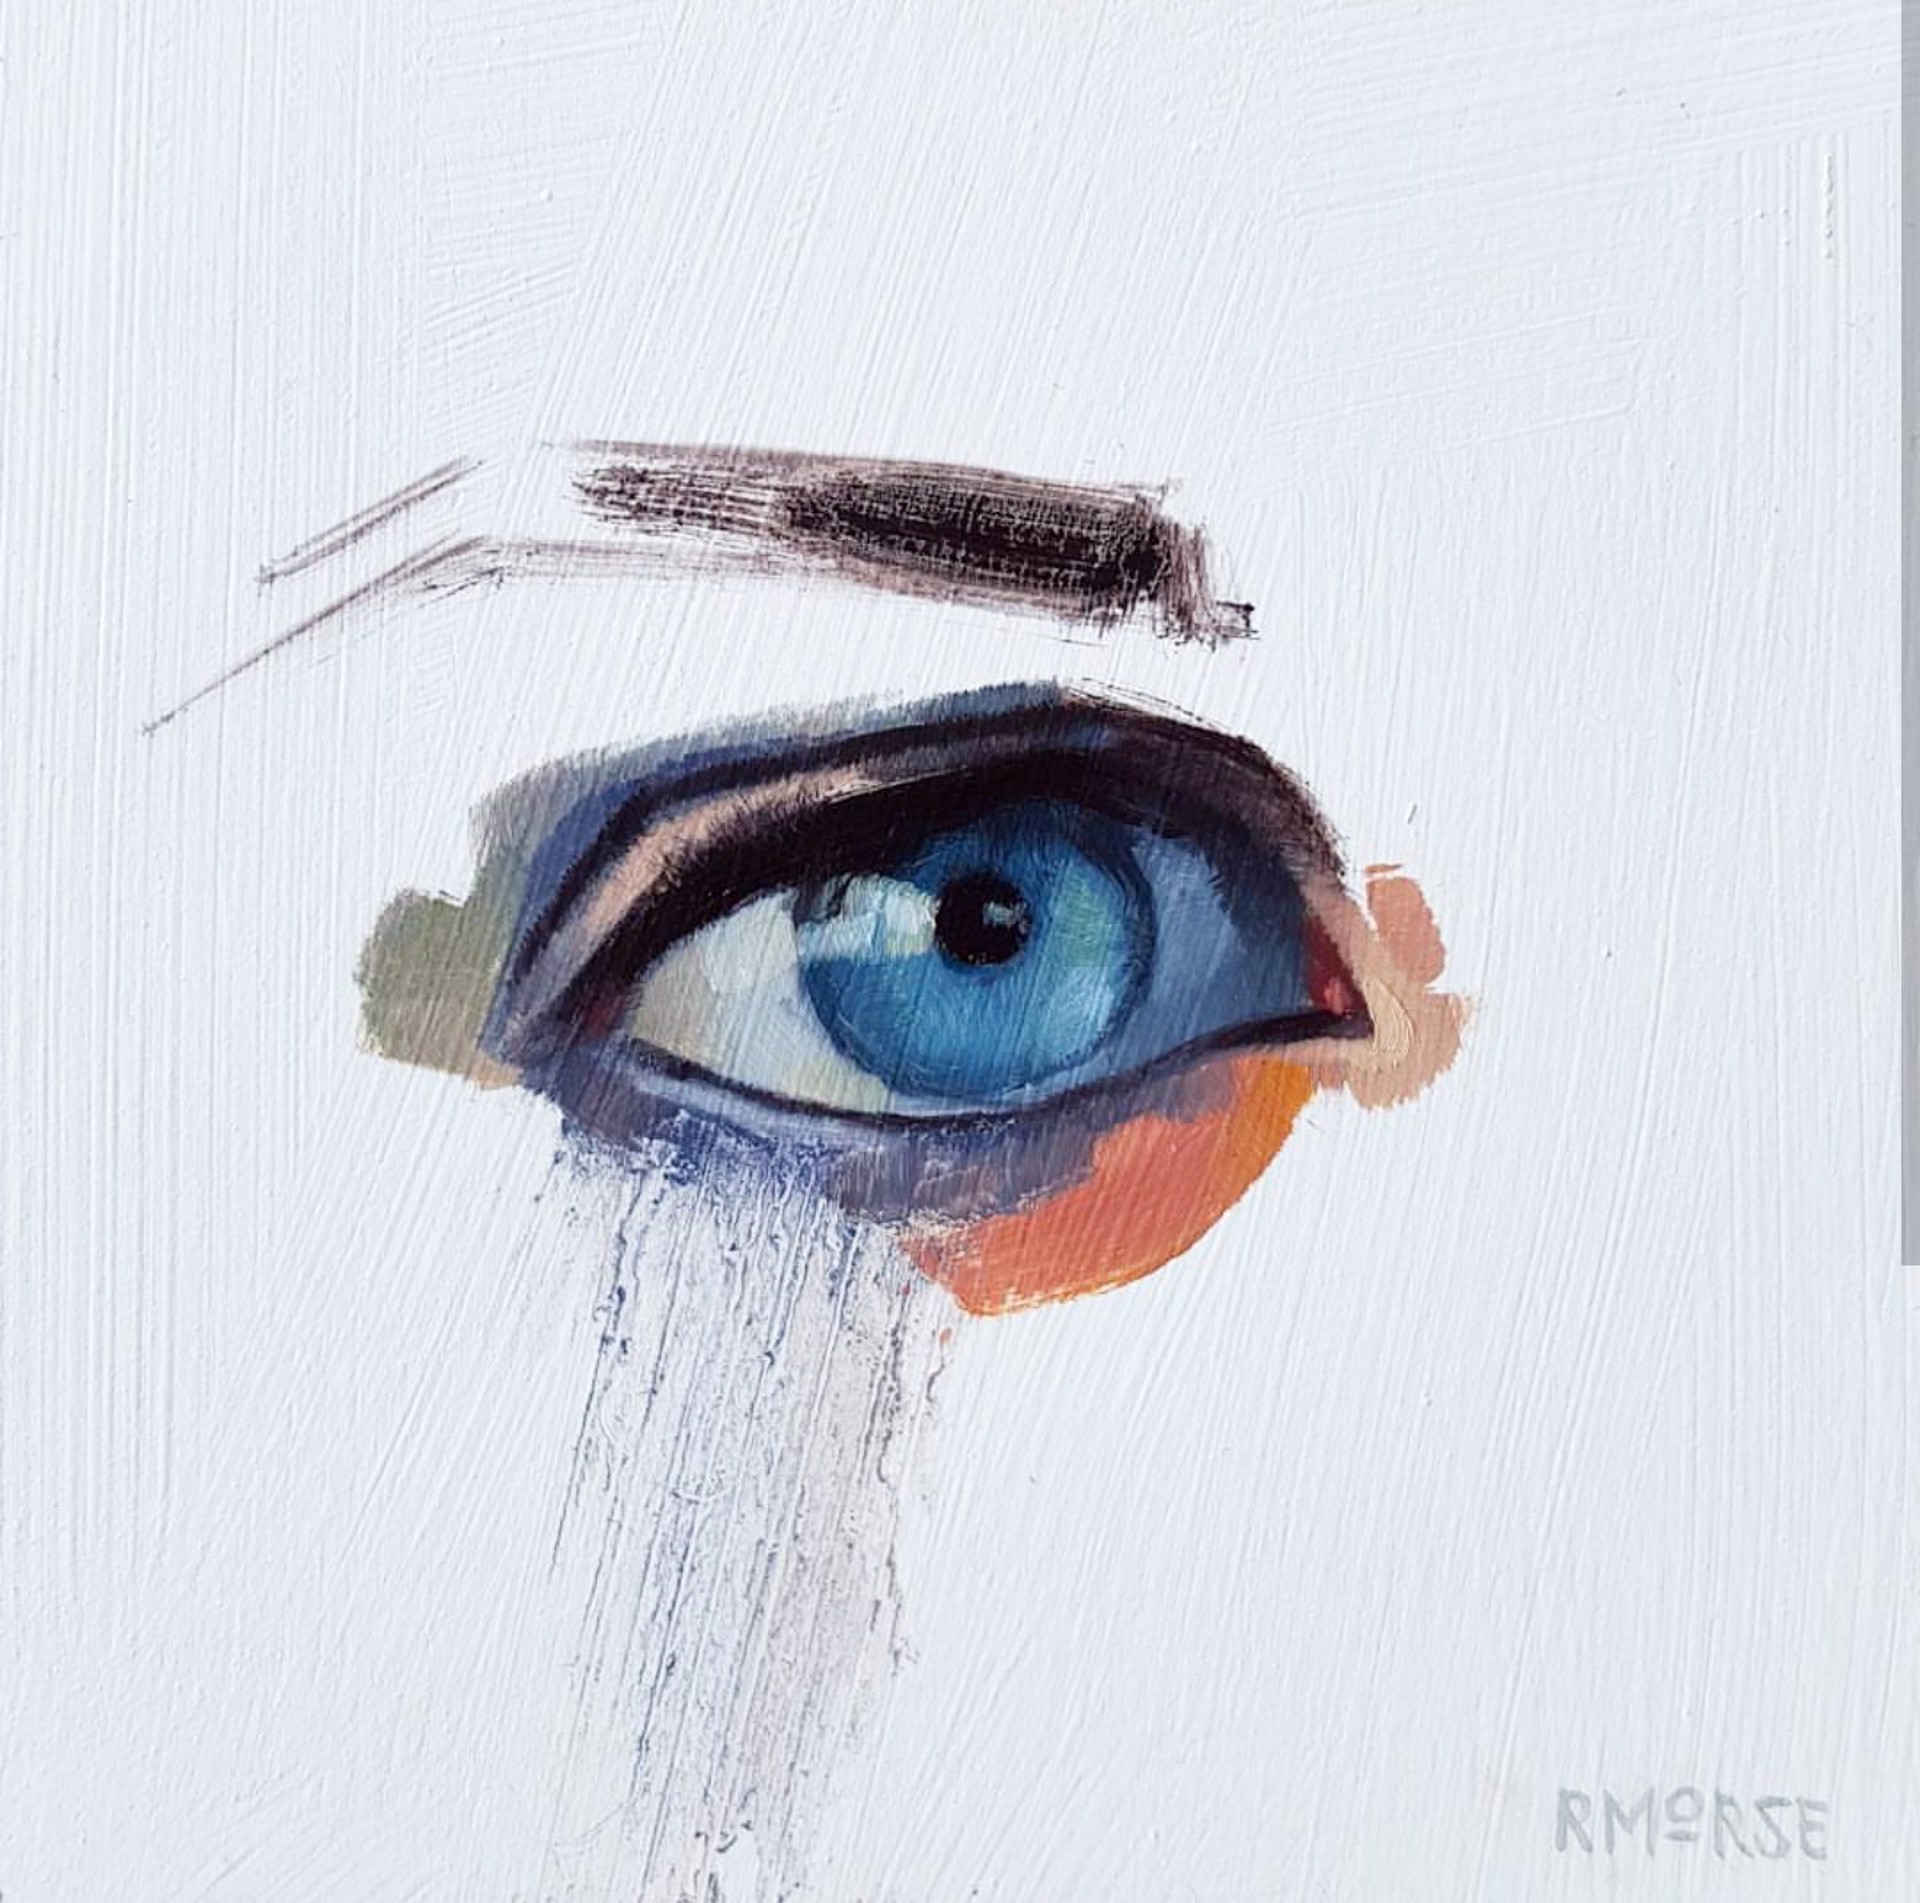 Ryan Morse - Simple Eye Oil on wood panel 5 x 5 in $400.00